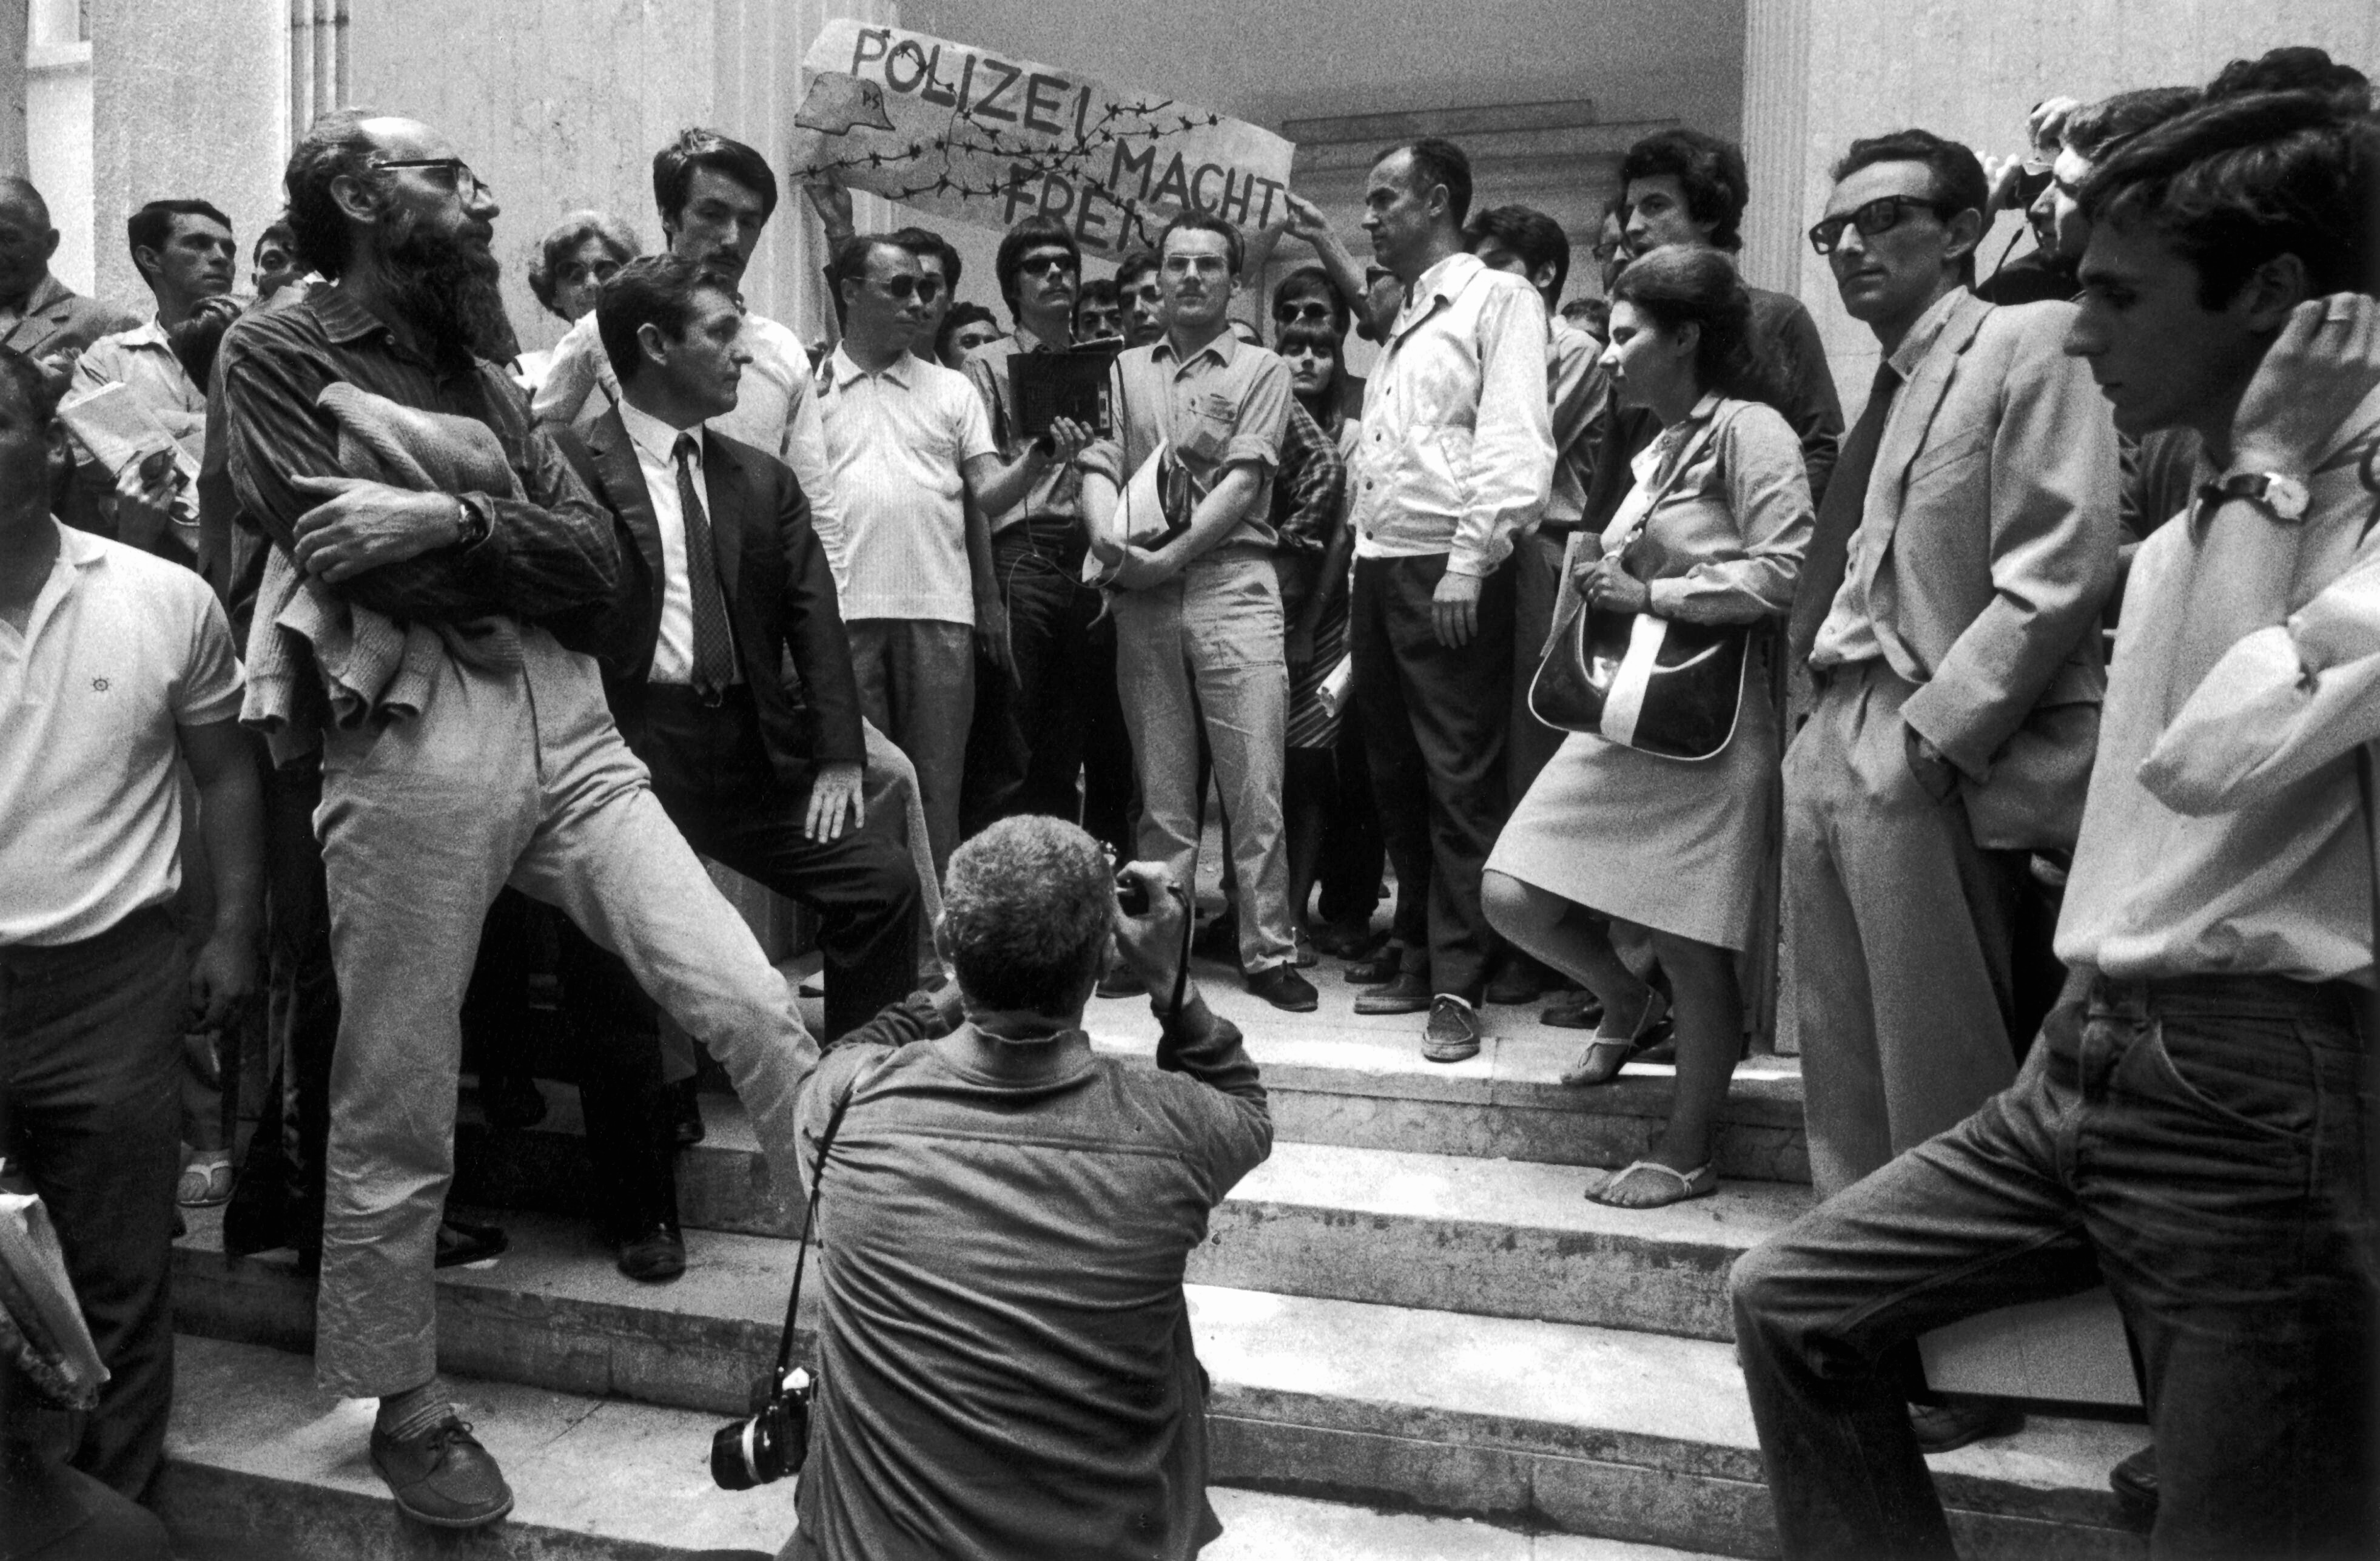 Venezia 1969 - La contestazione della Biennale. Emilio Vedova a sinistra, Luigi Nono al centro, Ugo Mulas di spalle (Contrasto)